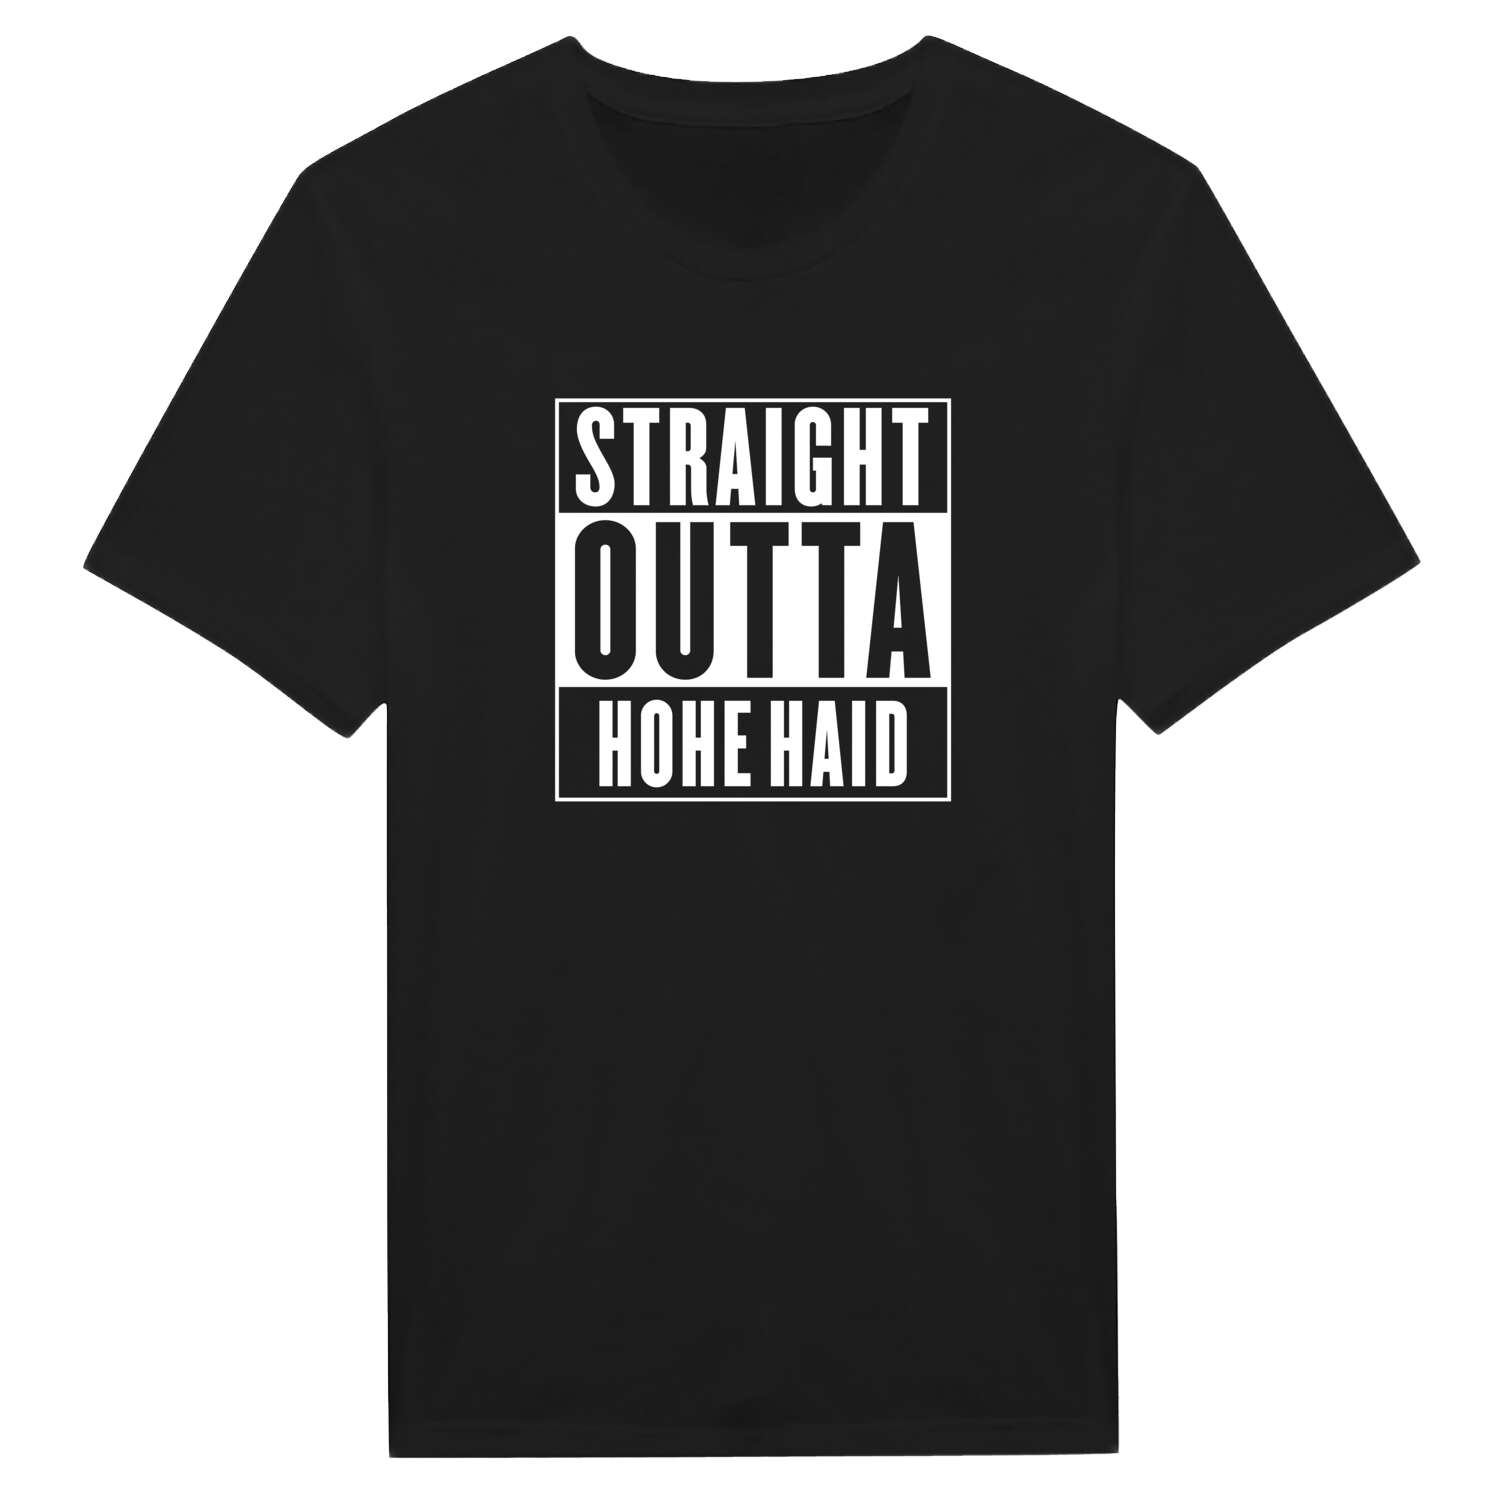 Hohe Haid T-Shirt »Straight Outta«